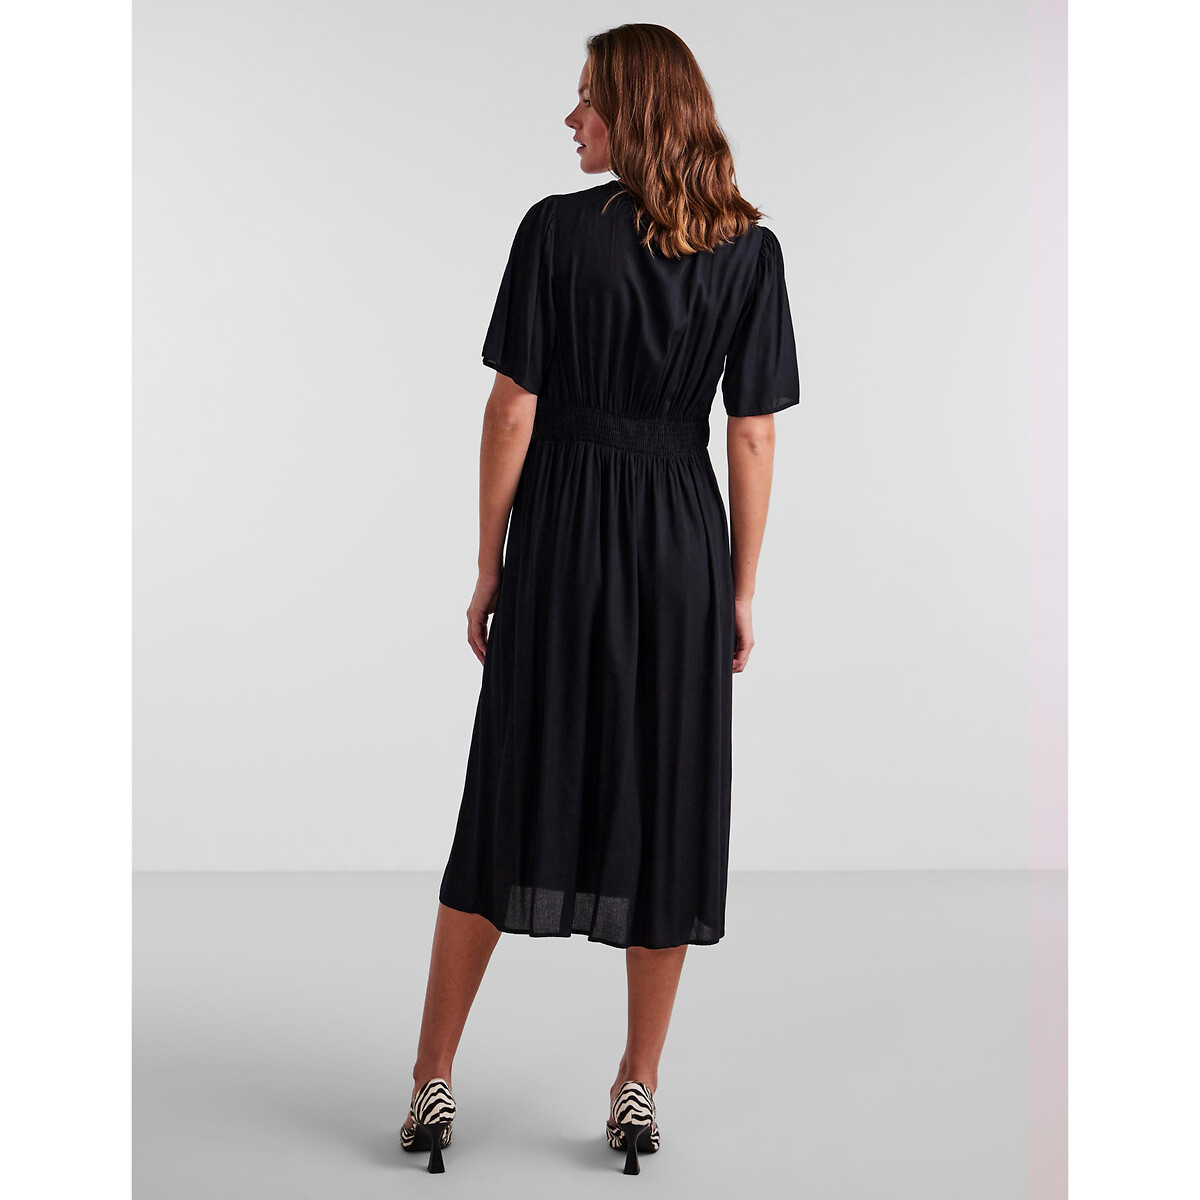 Платье Миди на пуговицах XS черный LaRedoute, размер XS - фото 4